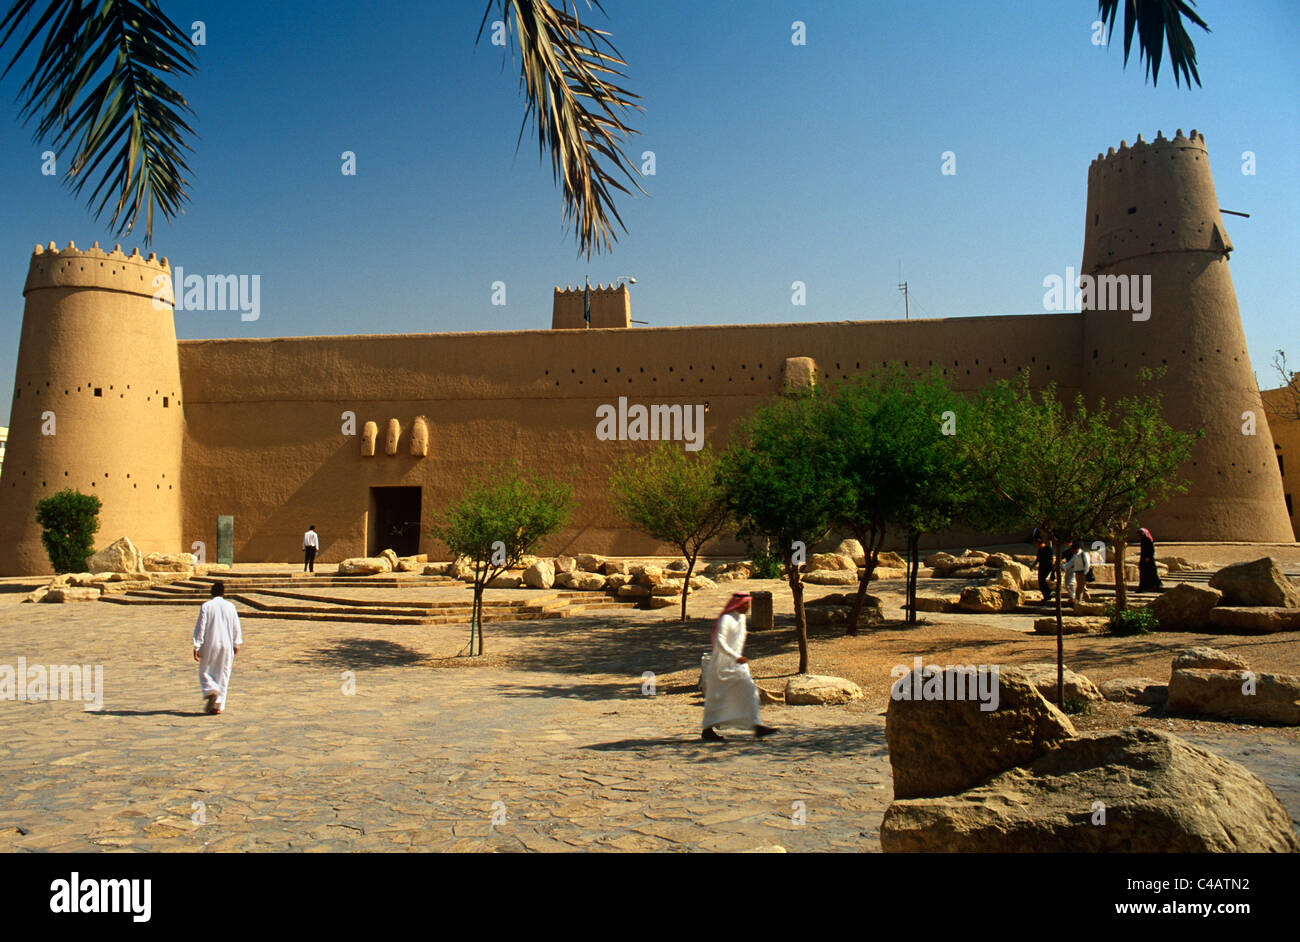 Saudi Arabia, Riyadh. Built in around 1865 and now much restored, Masmak Fort (or Qasr al-Masmak) Stock Photo